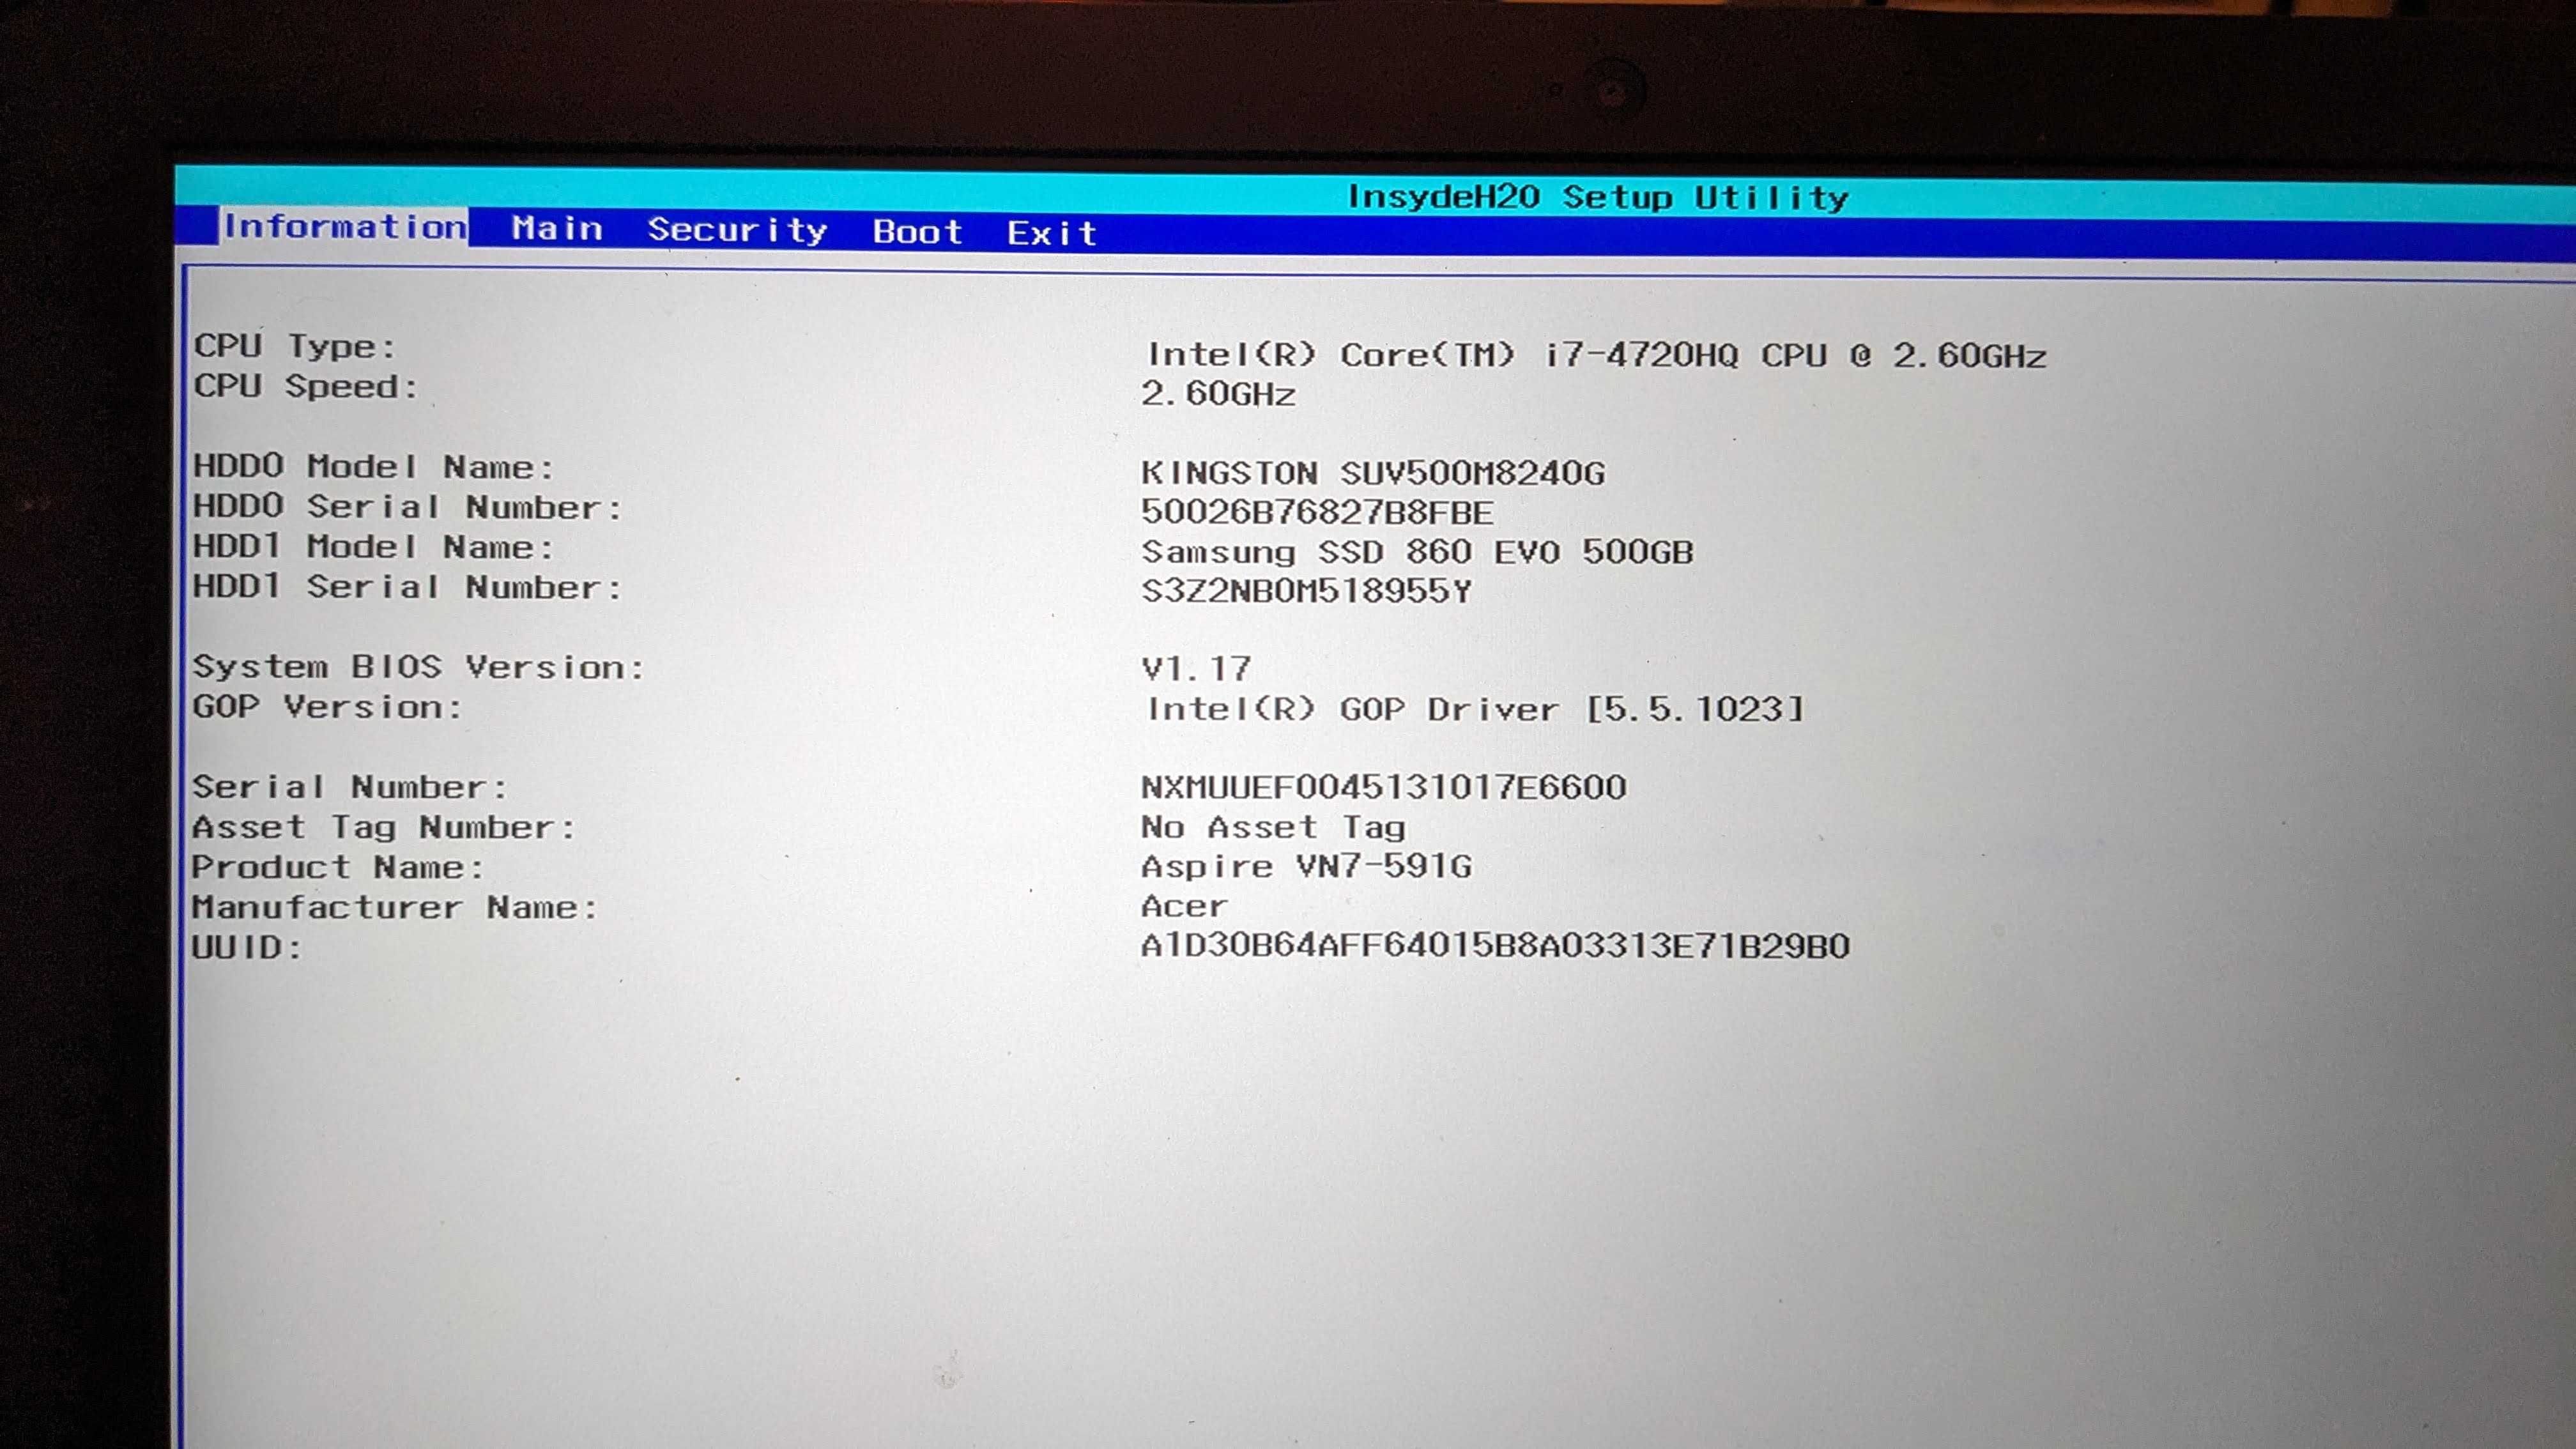 Acer Aspire V15 Nitro i7 GTX960M 4K UltraHD!